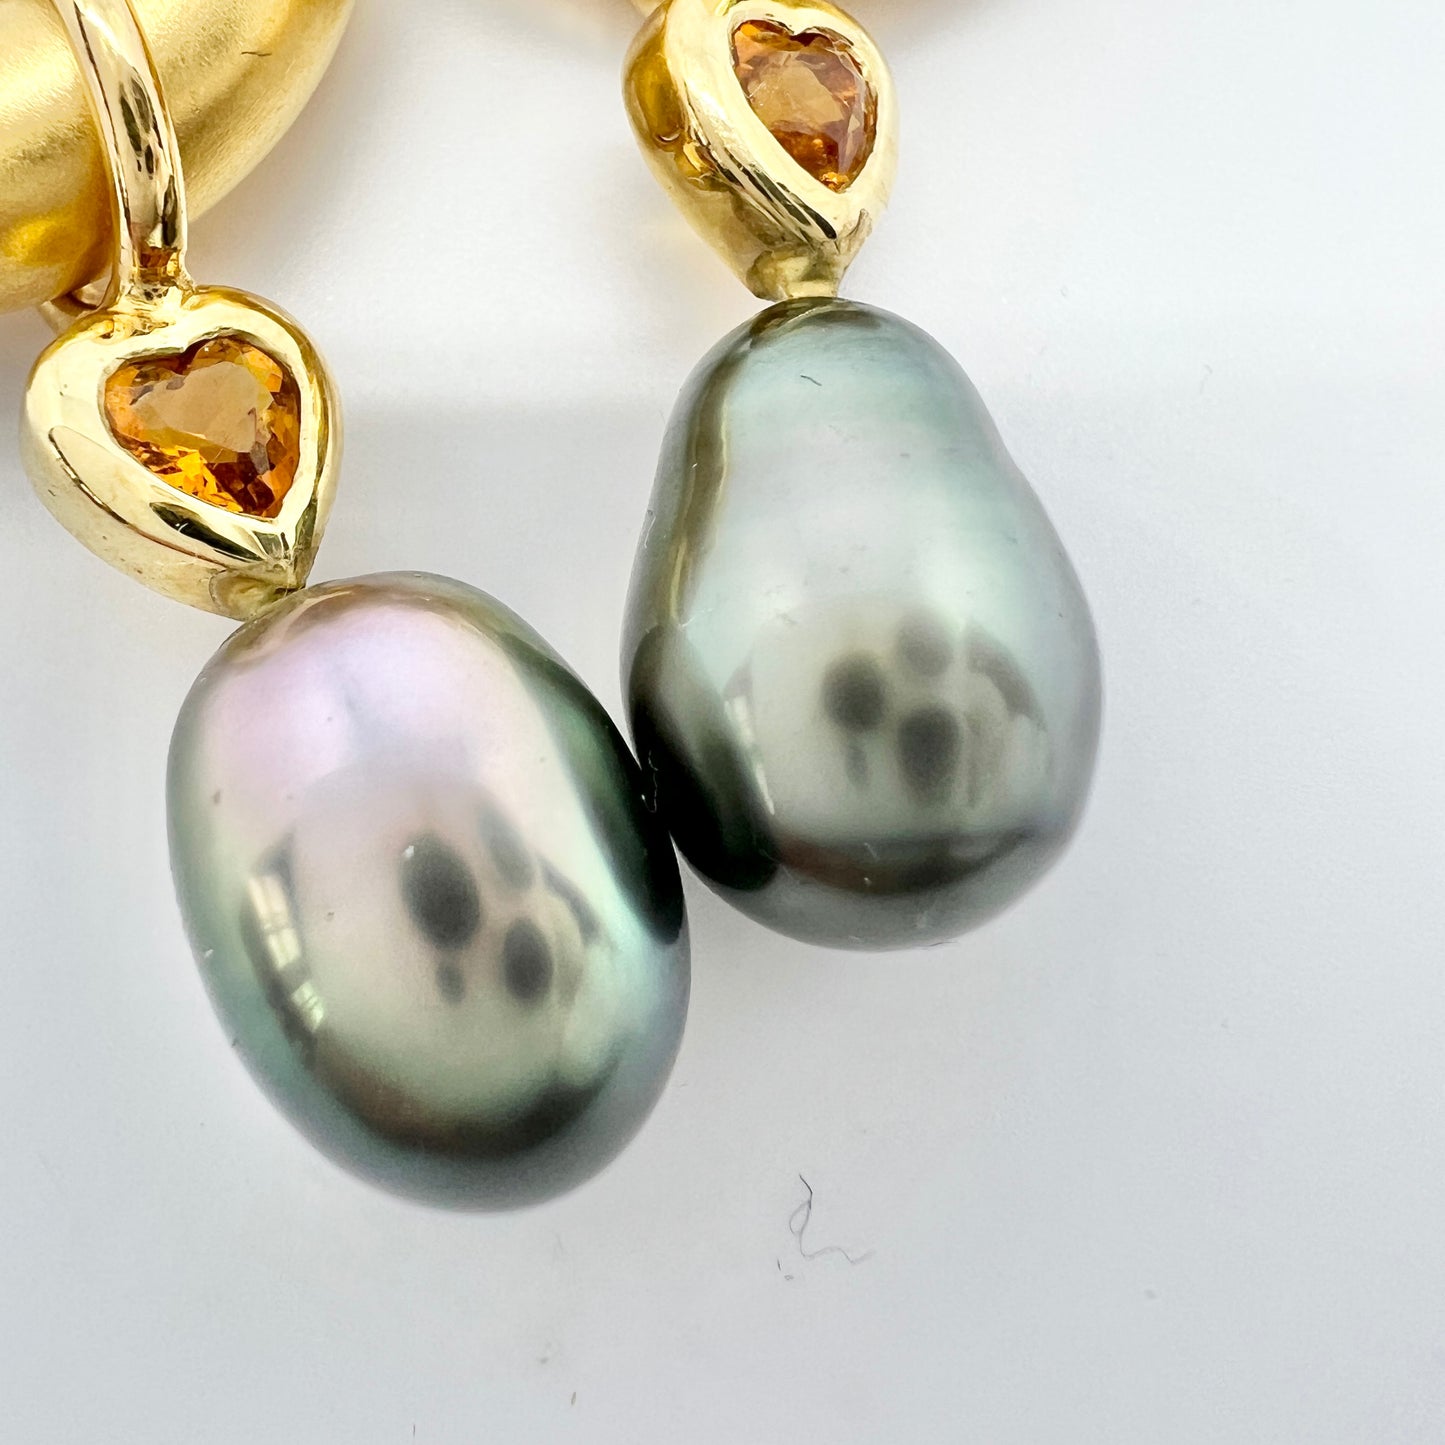 Vintage 18k Gold Citrine Heart Tahitian Pearl Earrings.